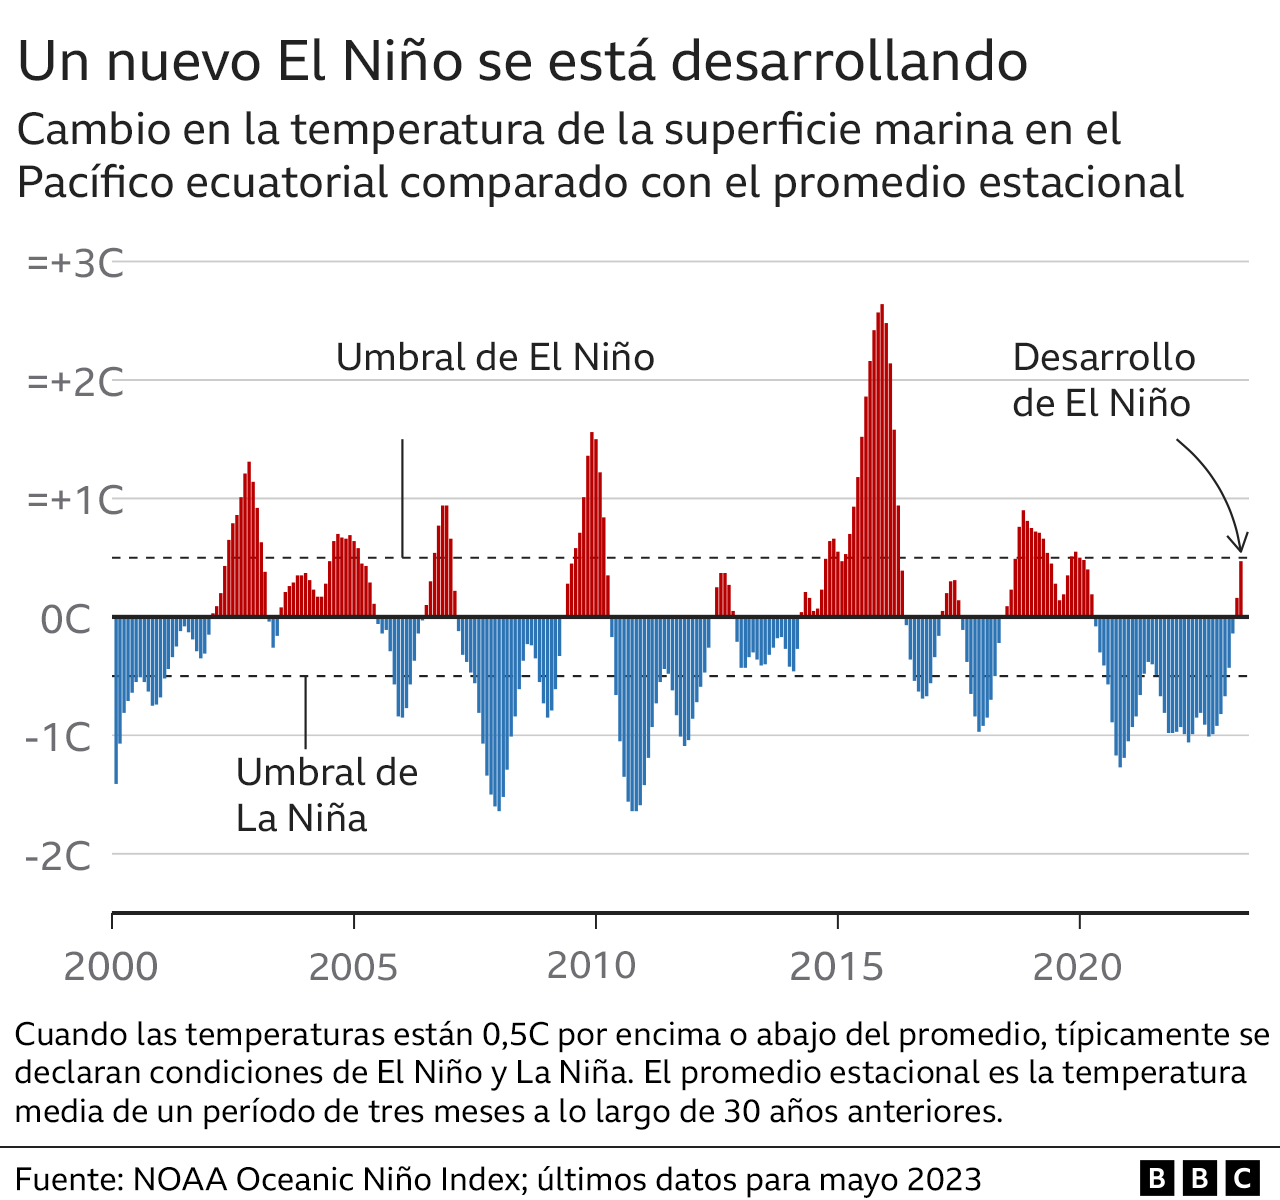 Gráfico muestra las temperaturas alcanzadas por los fenómenos El Niño y La Niña en los últimos 20 años